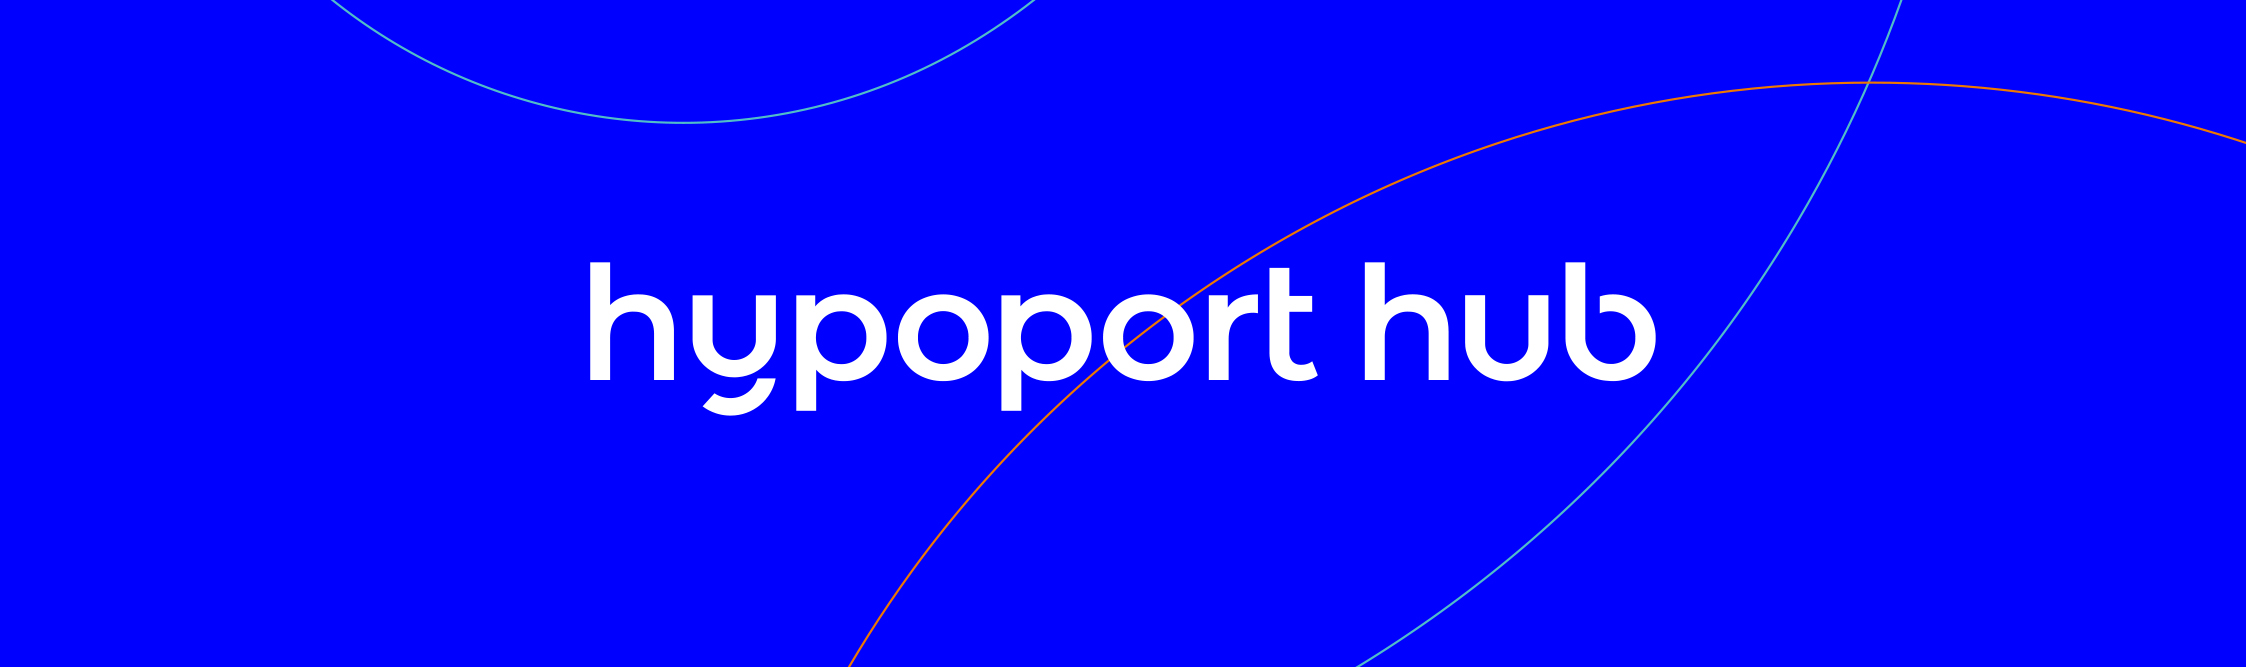 Hypoport hub SE